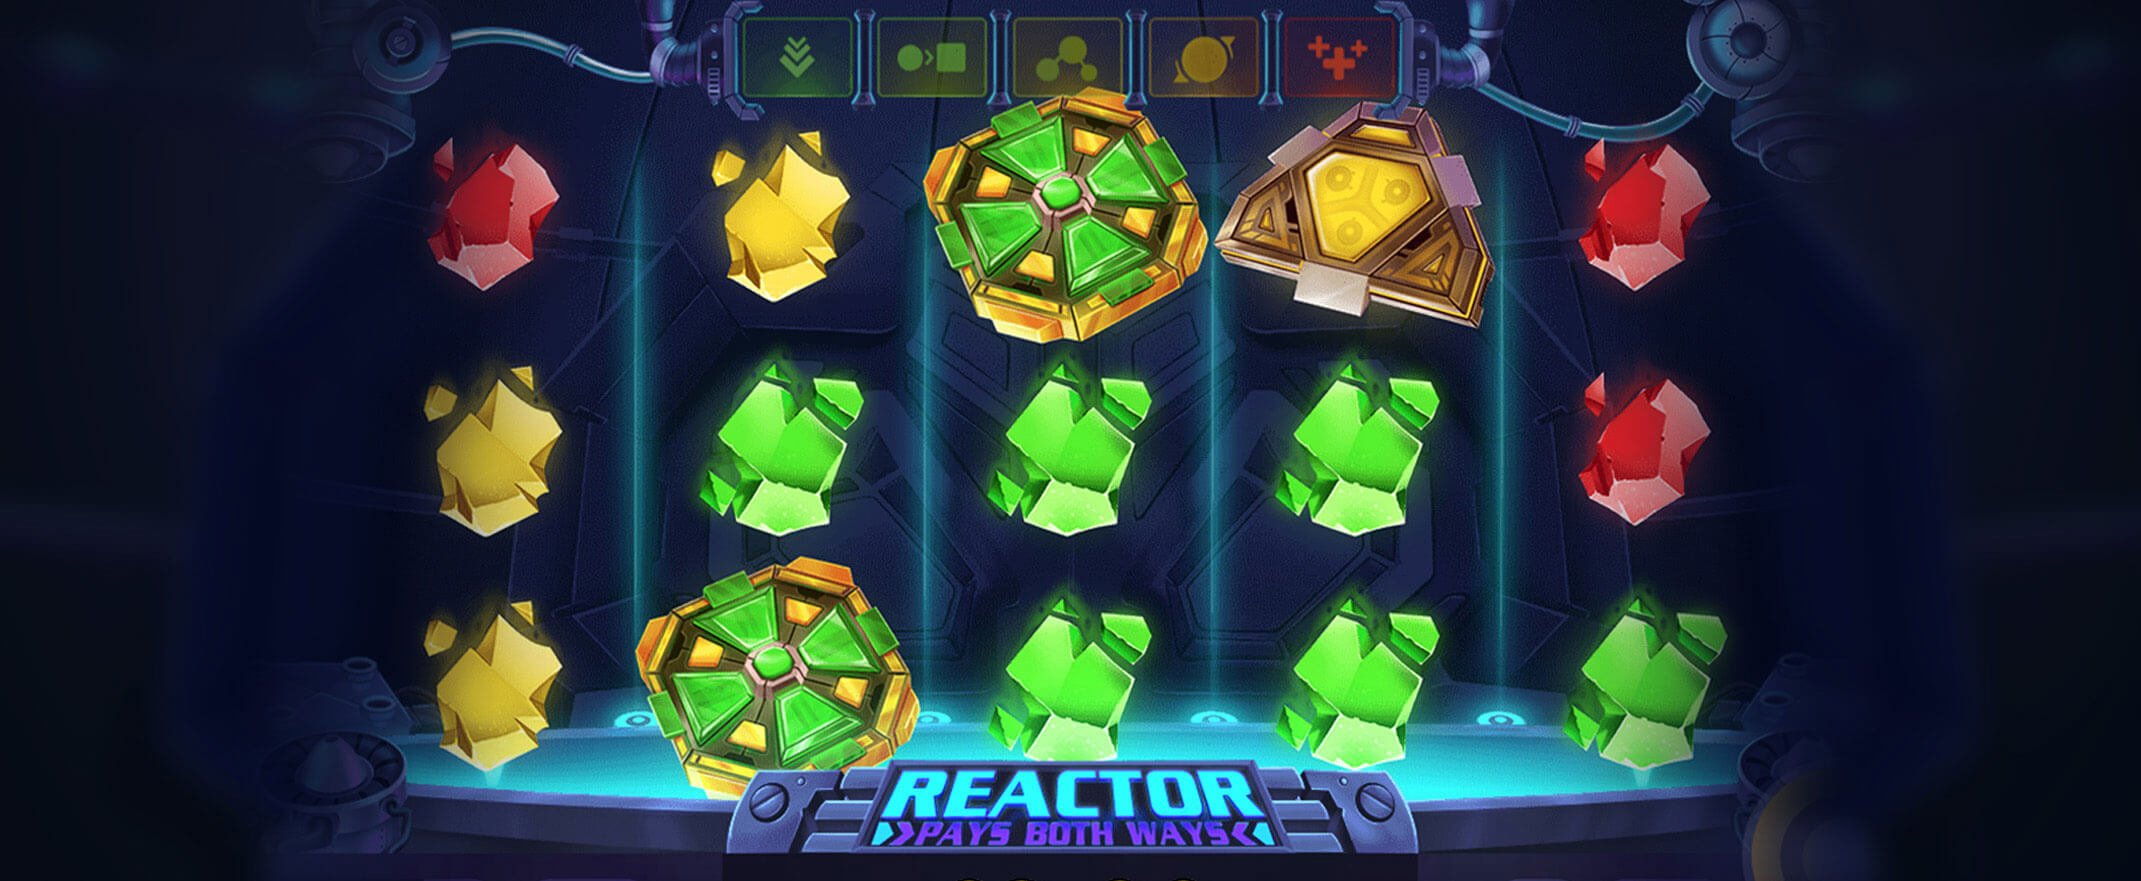 Reactor peliautomaatti Red Tiger Gamingilta